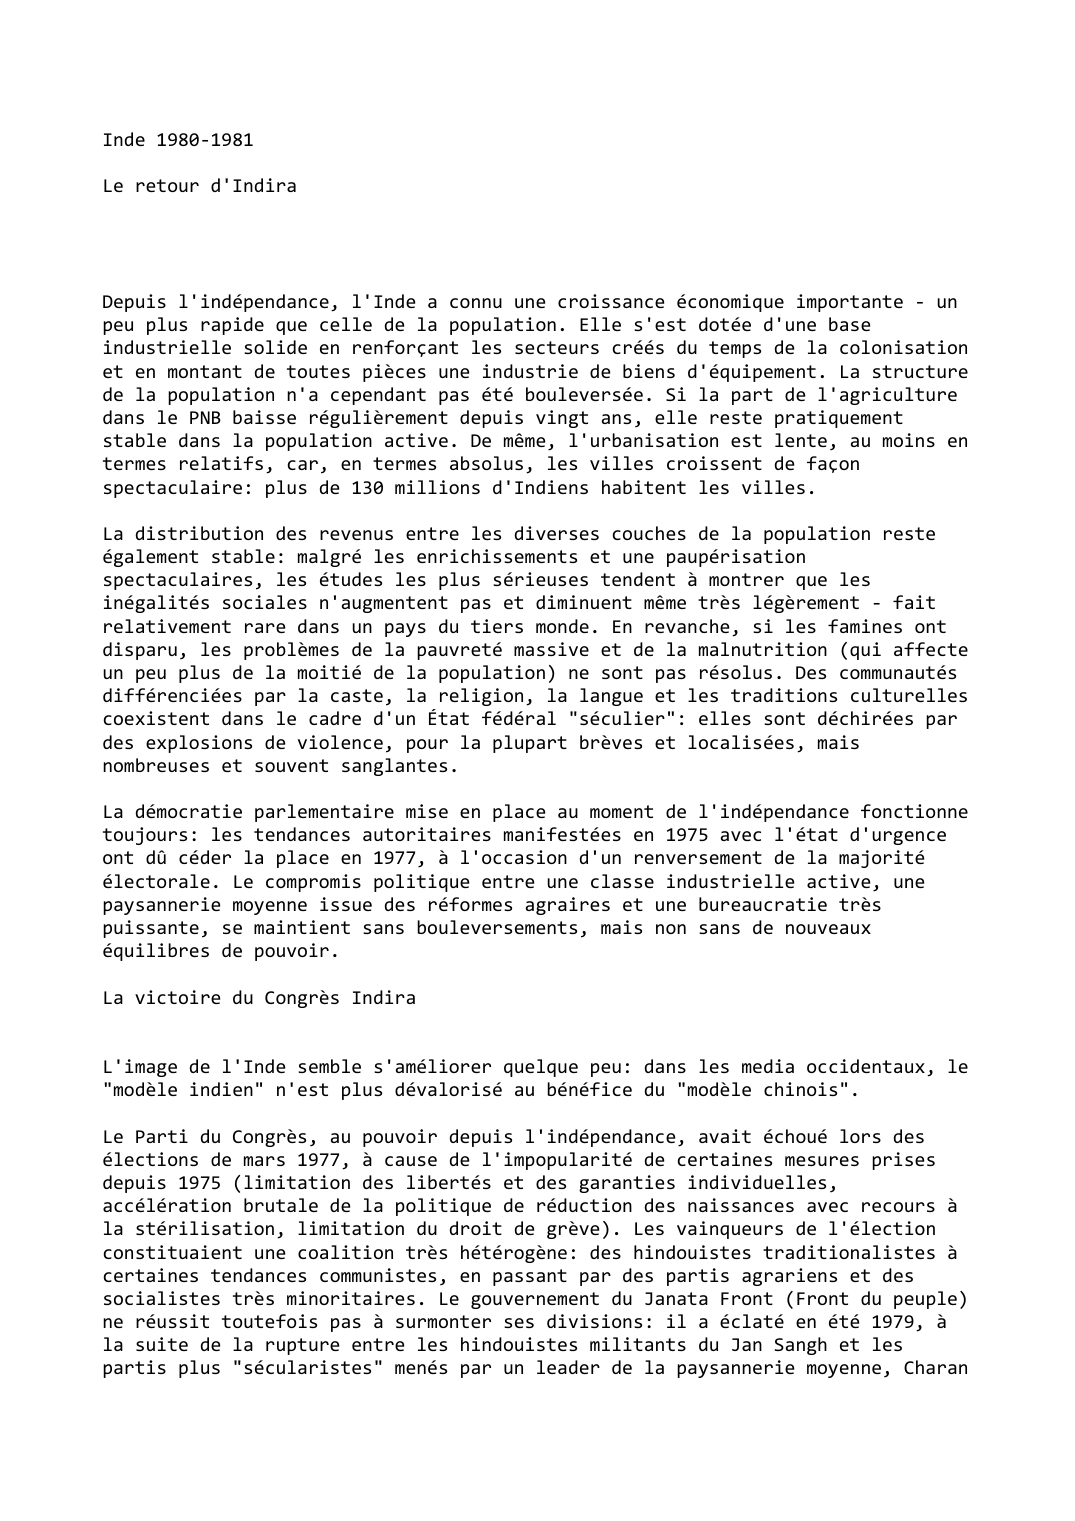 Prévisualisation du document Inde (1980-1981)

Le retour d'Indira